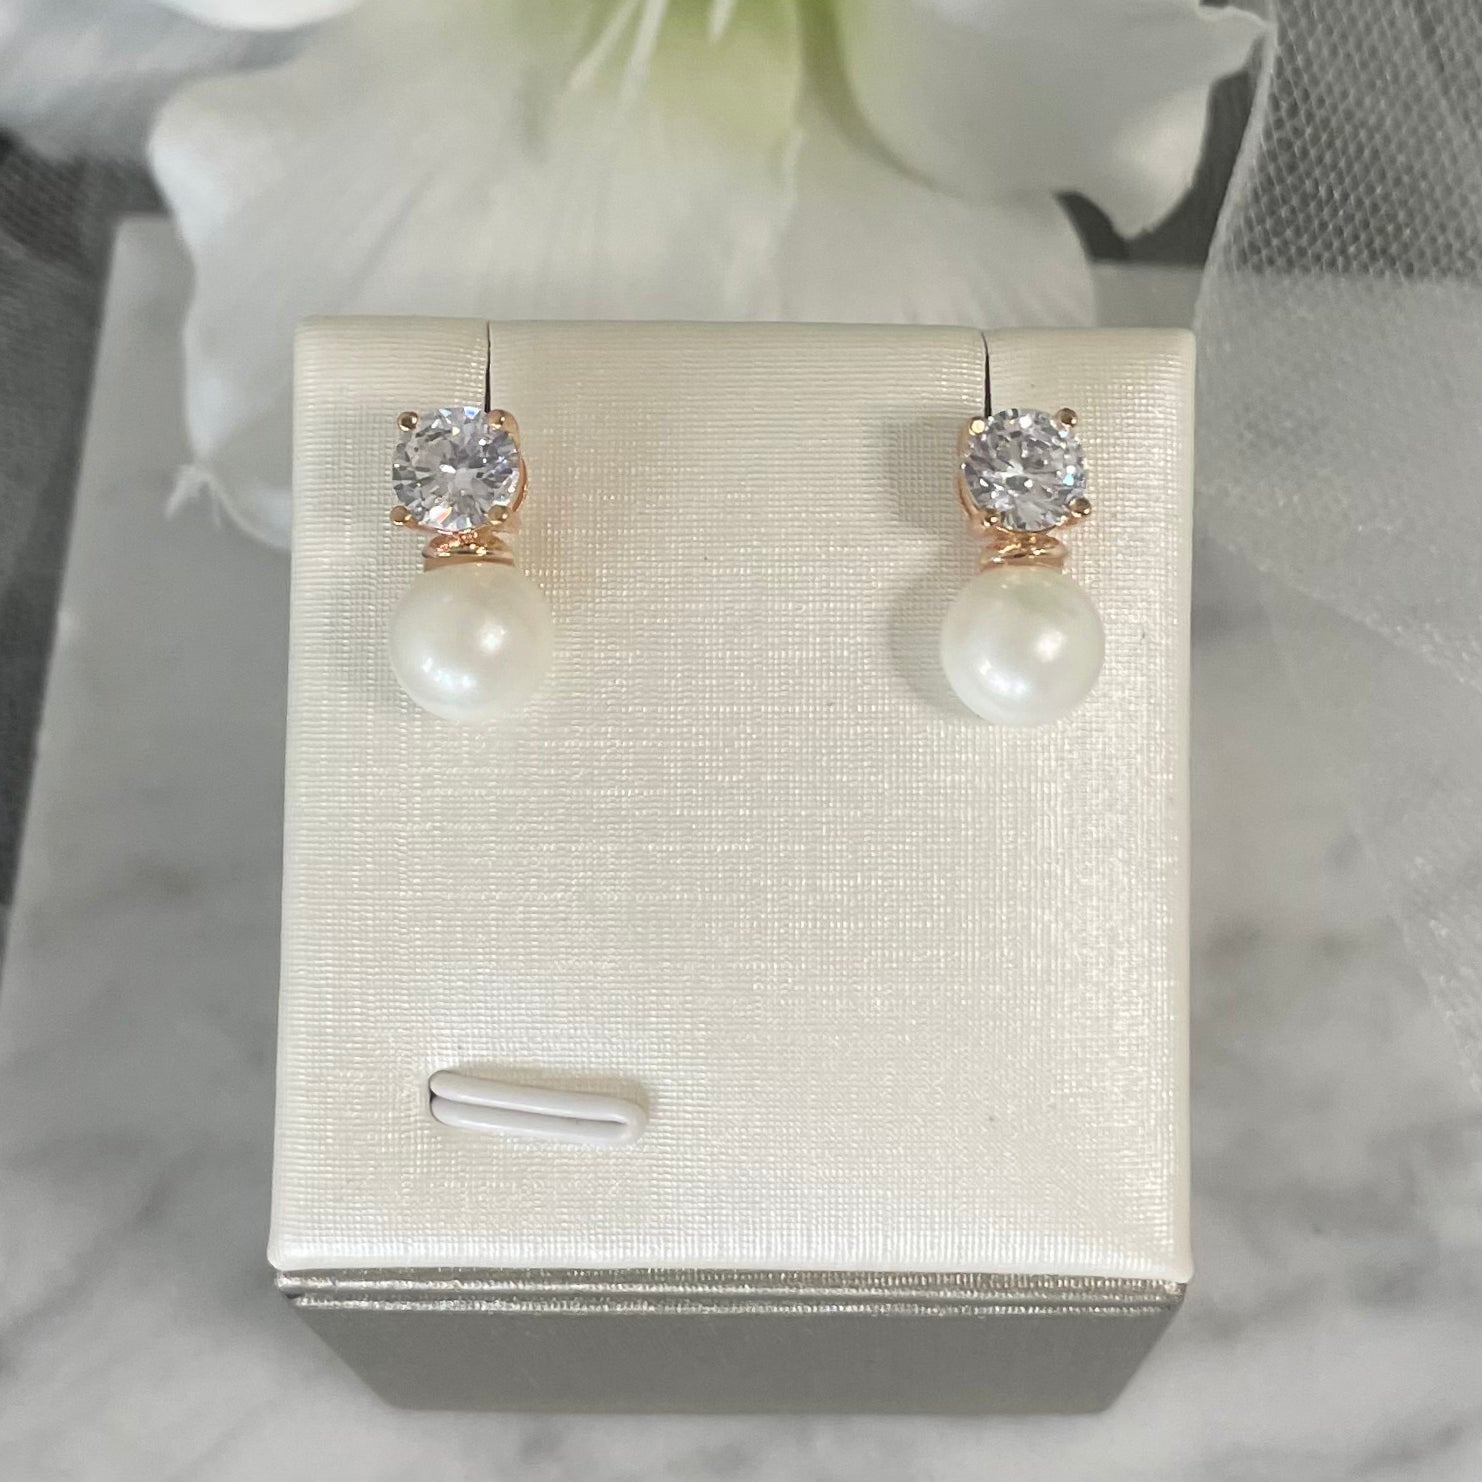 Zara Pearl & Simulated Diamond Pendant Set on Display